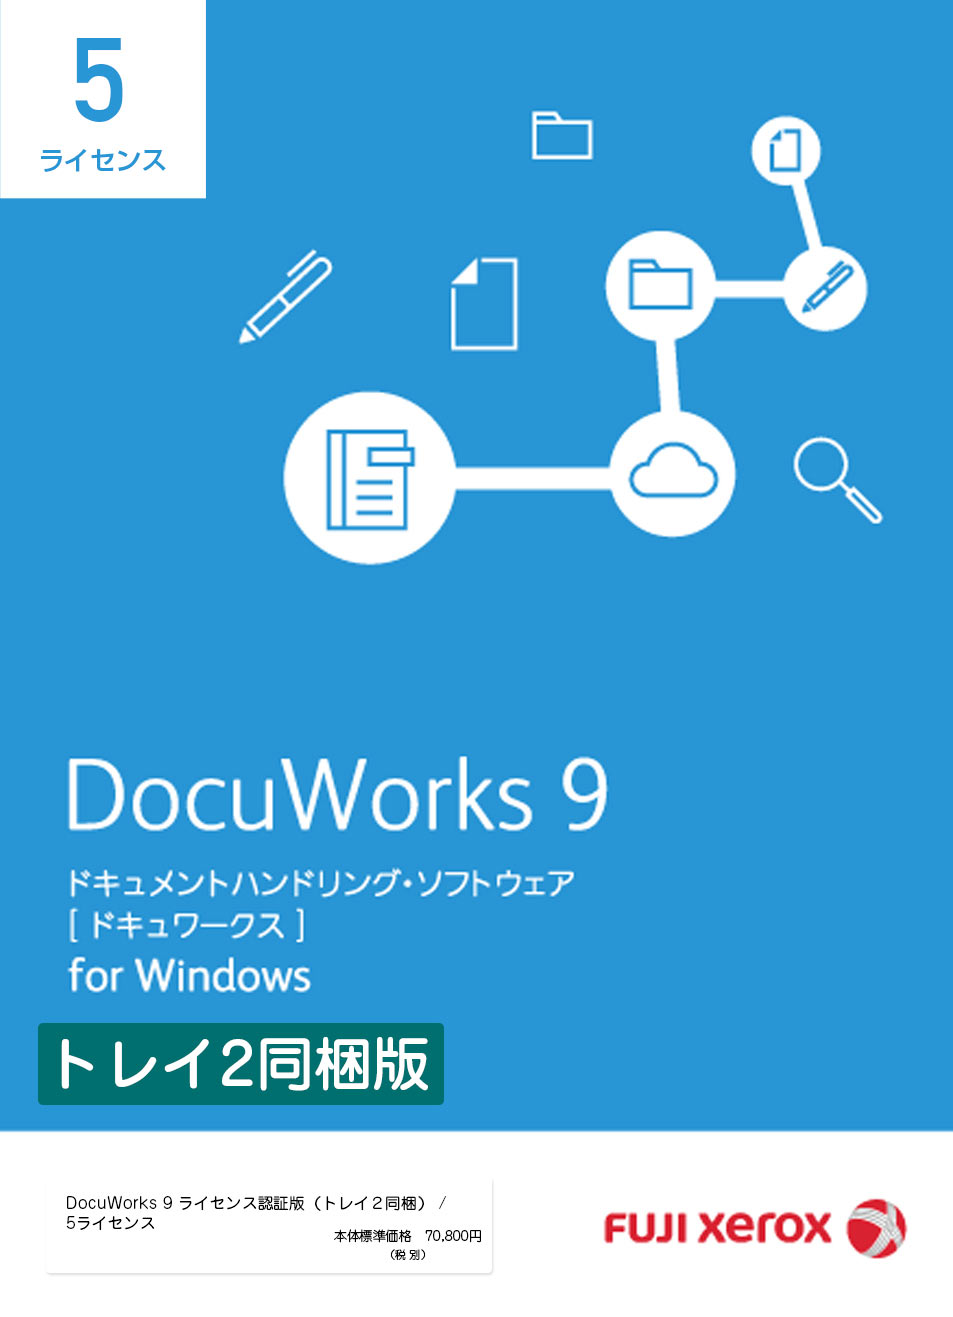 ドキュワークス9.1 アップグレード版 5ライセンス - パソコン用